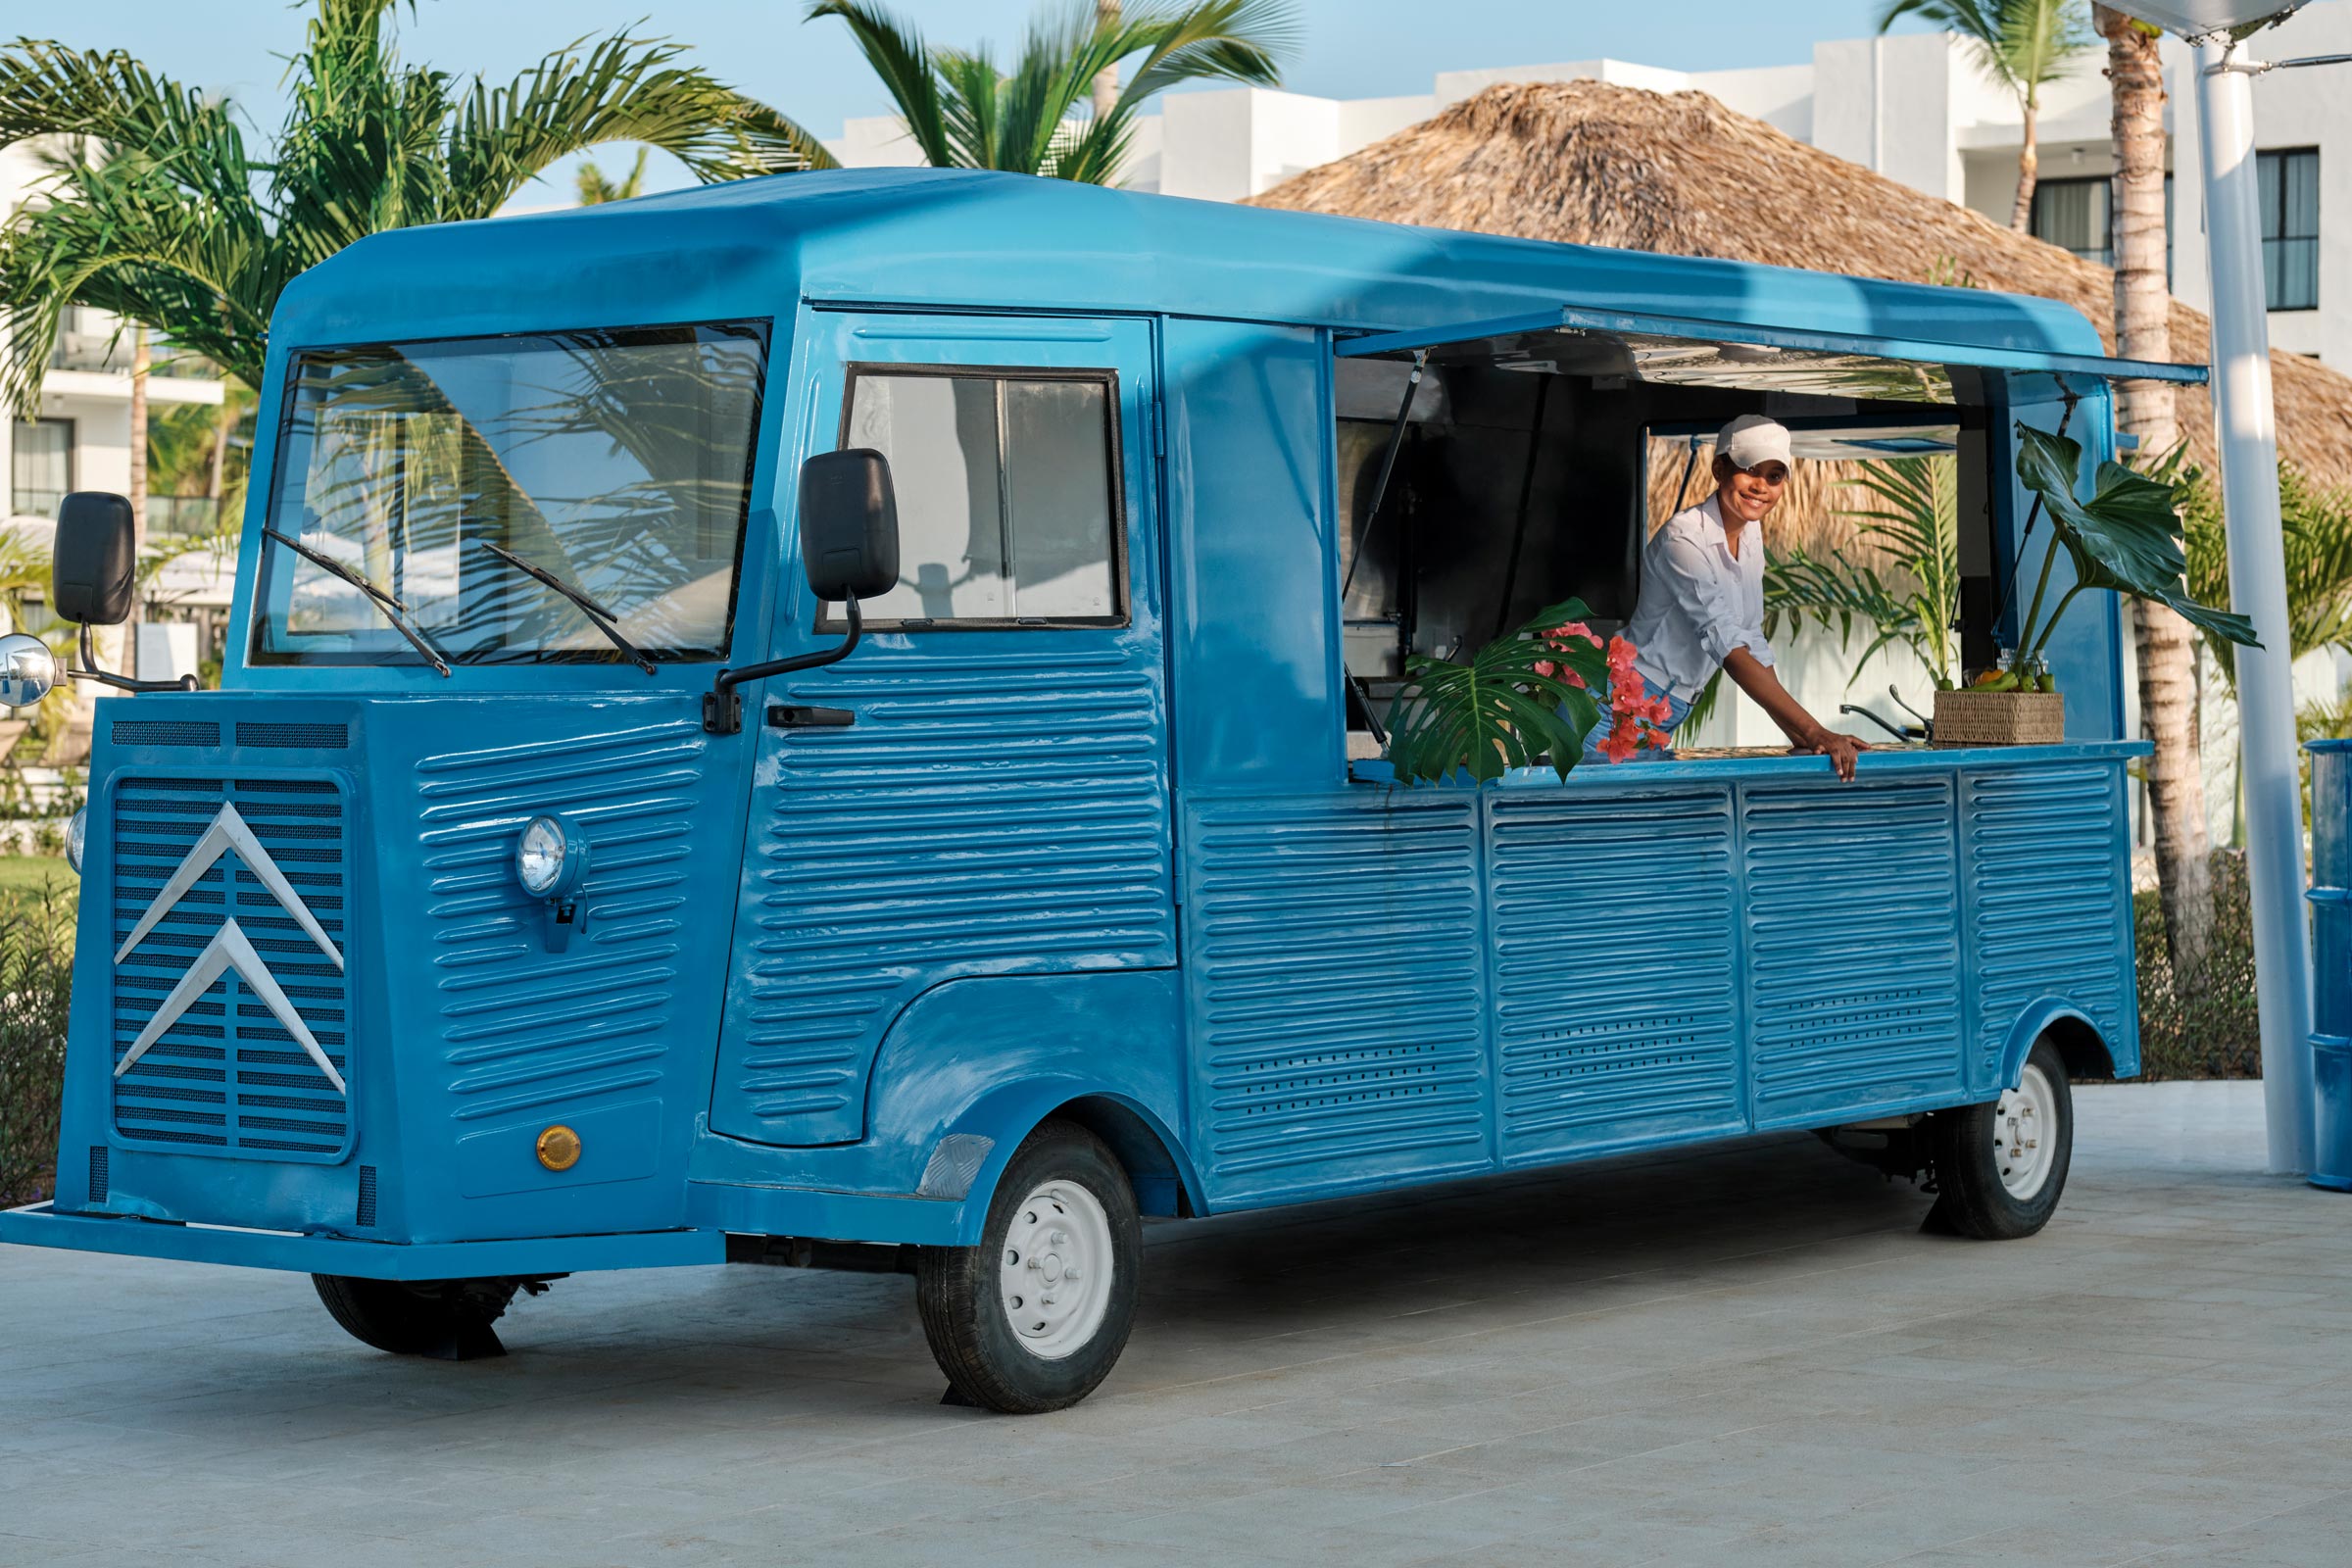 Food Trucks at a Punta Cana Resort